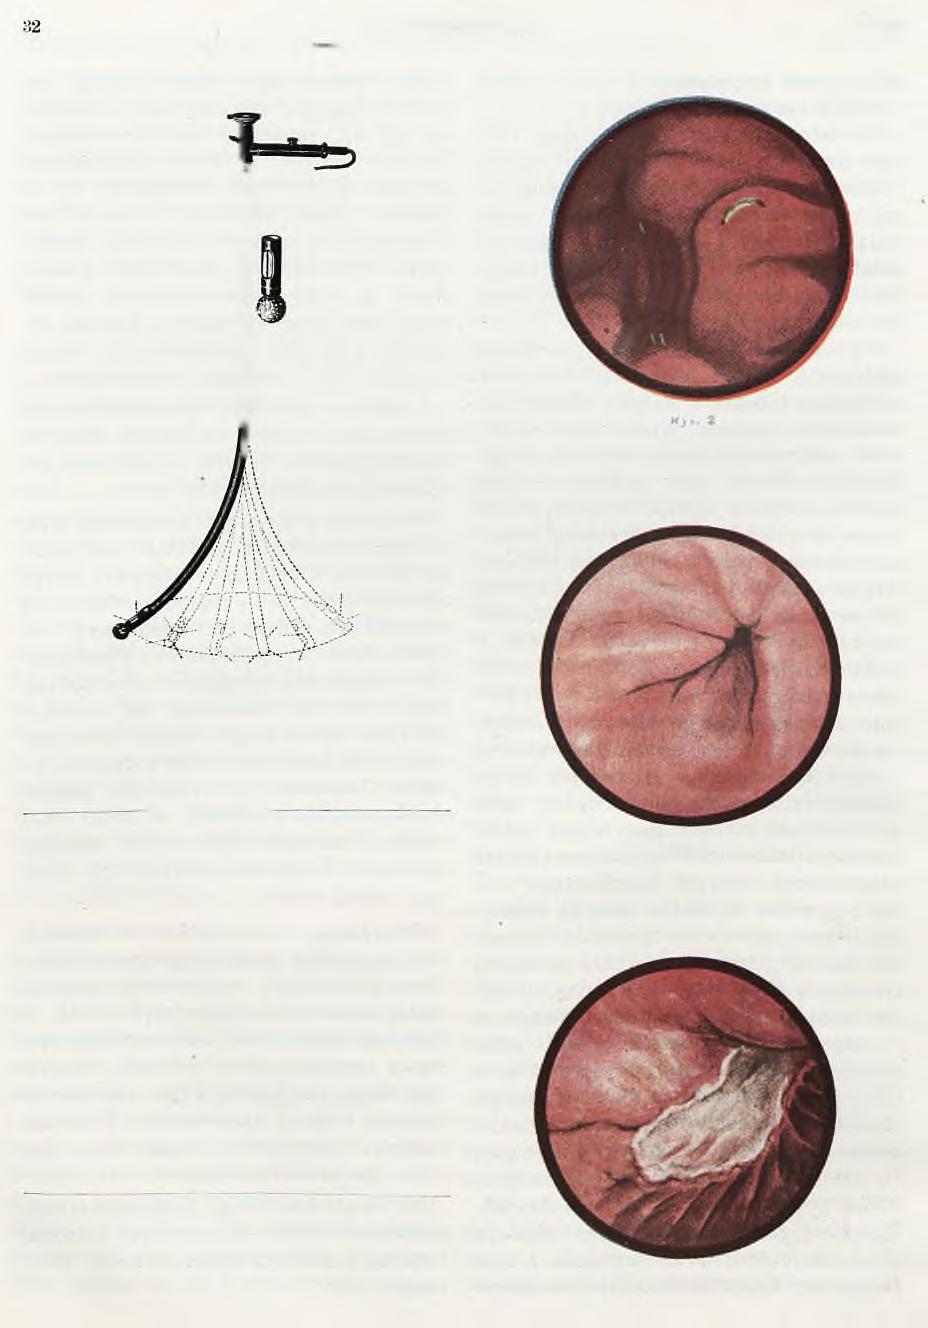 Zaorski: Gastroskopia. Ch. P. Rys. 1.